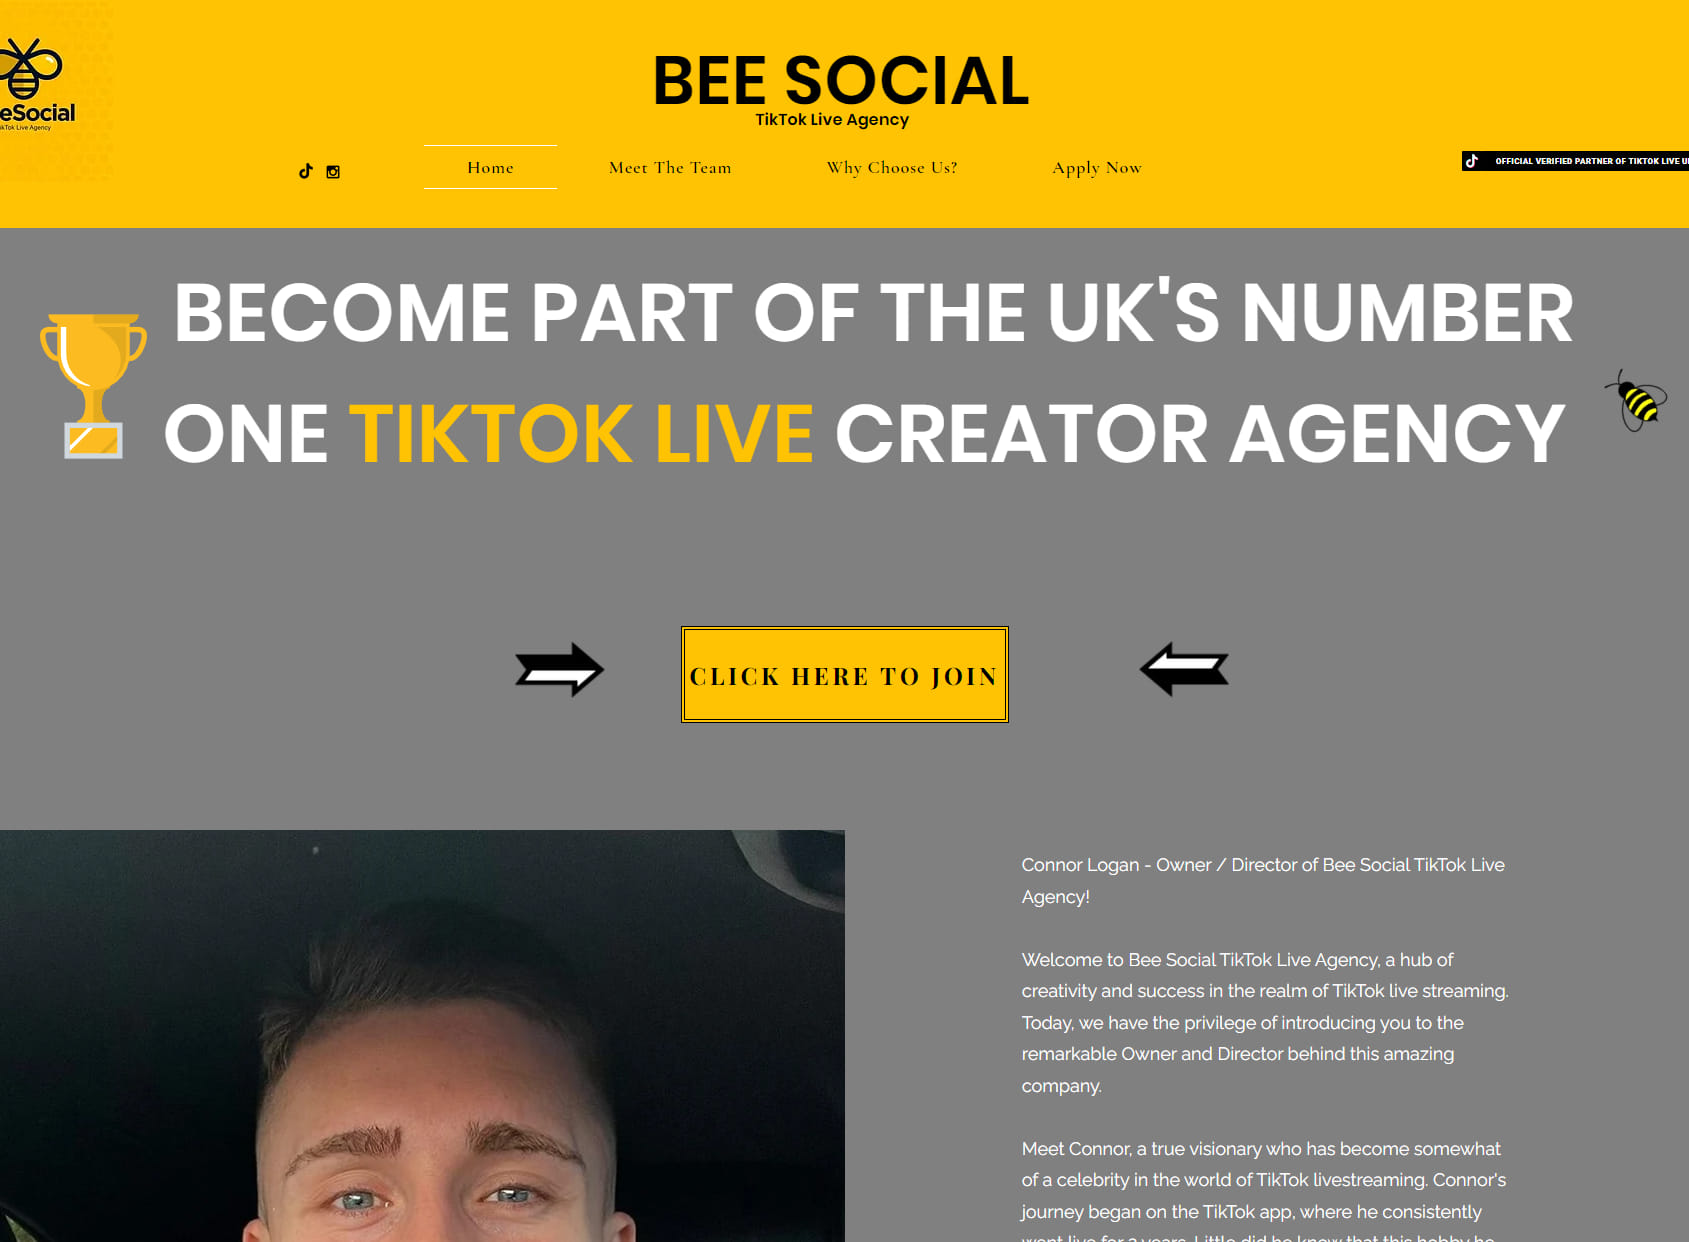 Bee Social TikTok Live Agency